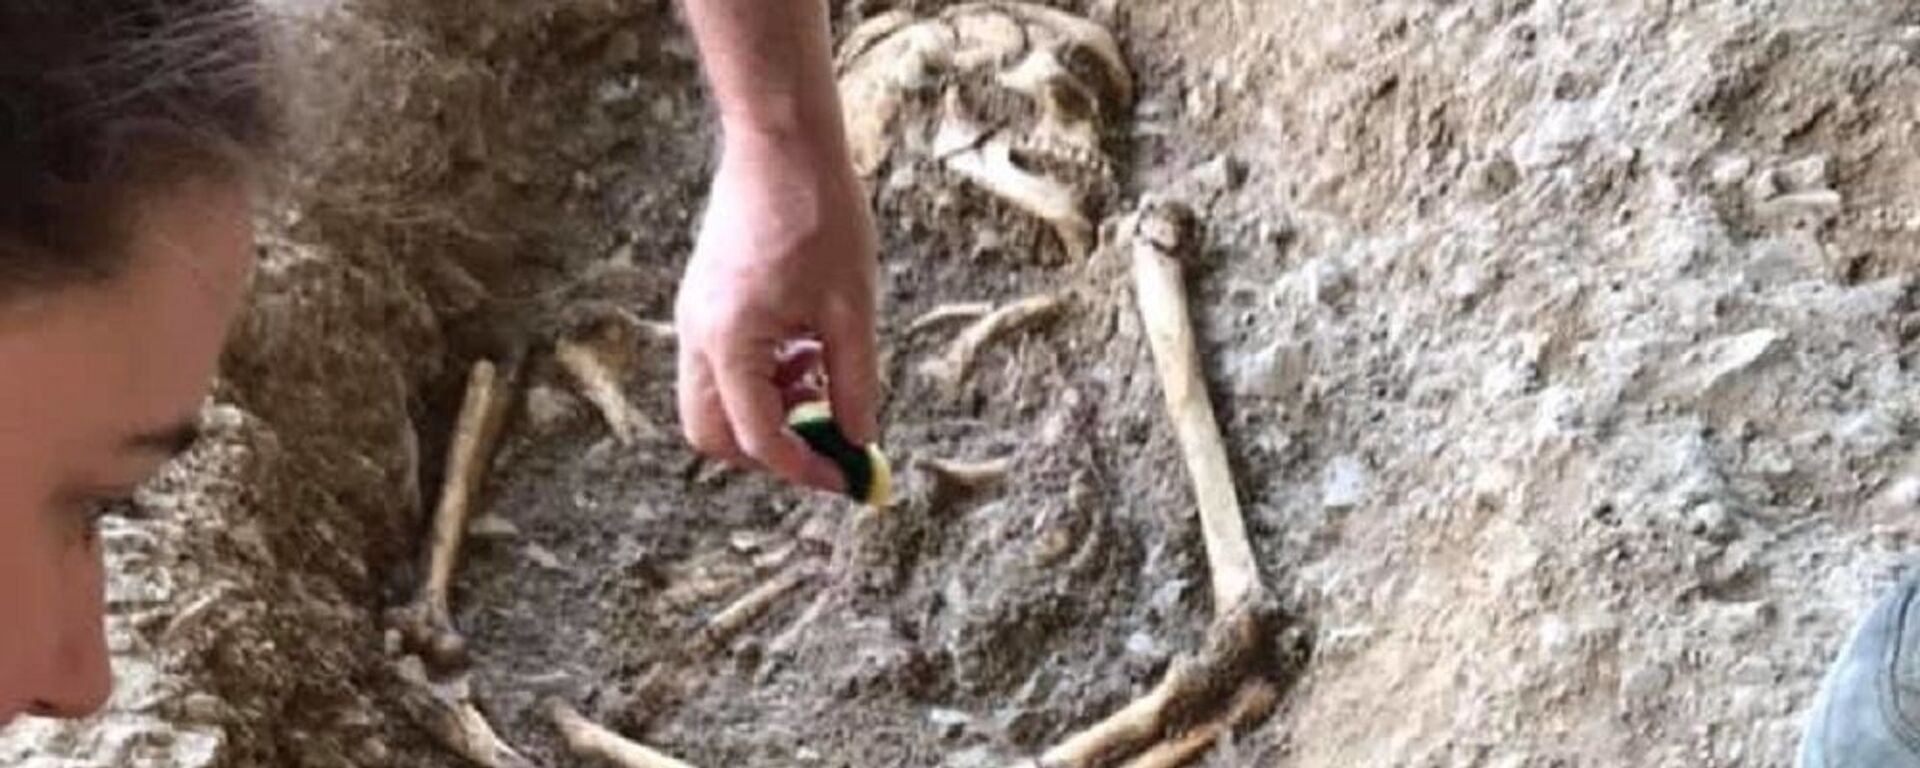 Skelet pronađen na lokalitetu Vlasac. - Sputnik Srbija, 1920, 29.09.2019